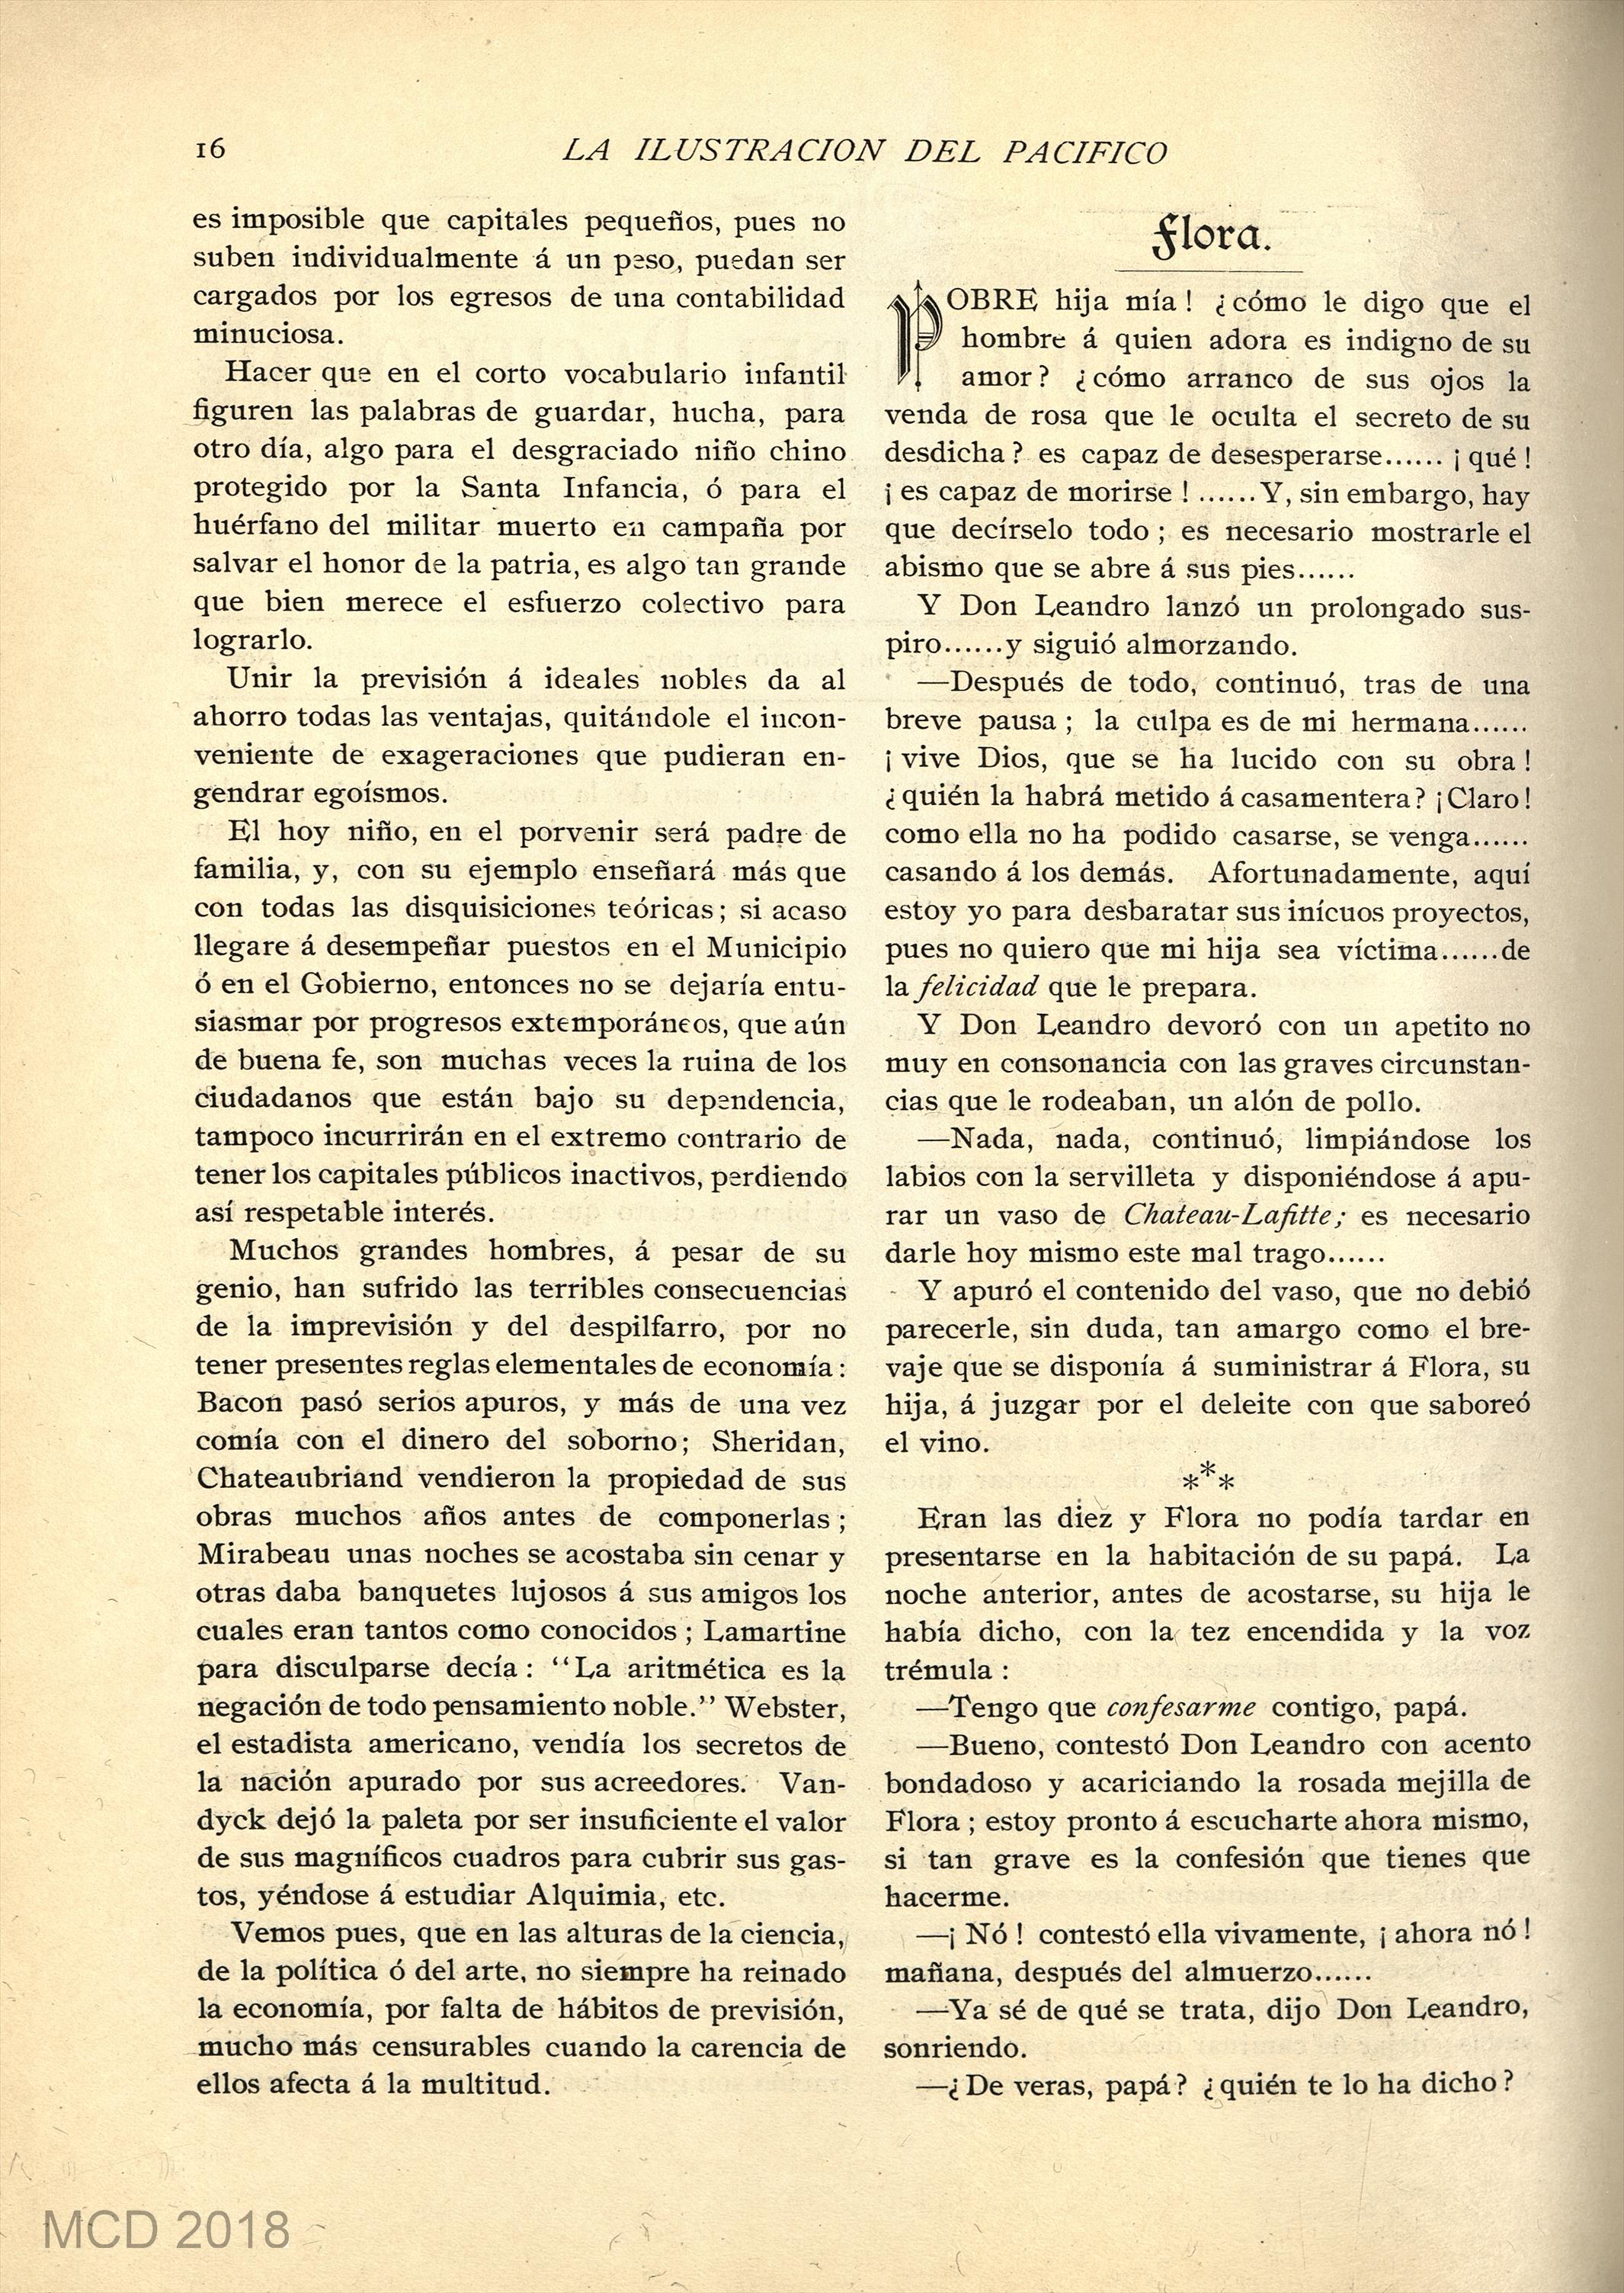 Biblioteca Virtual de Prensa Histórica > Colección iberoamericana > La  ilustracion del Pacifico : literatura, comercio, industria: Año II Número  26 - 15 agosto 1897